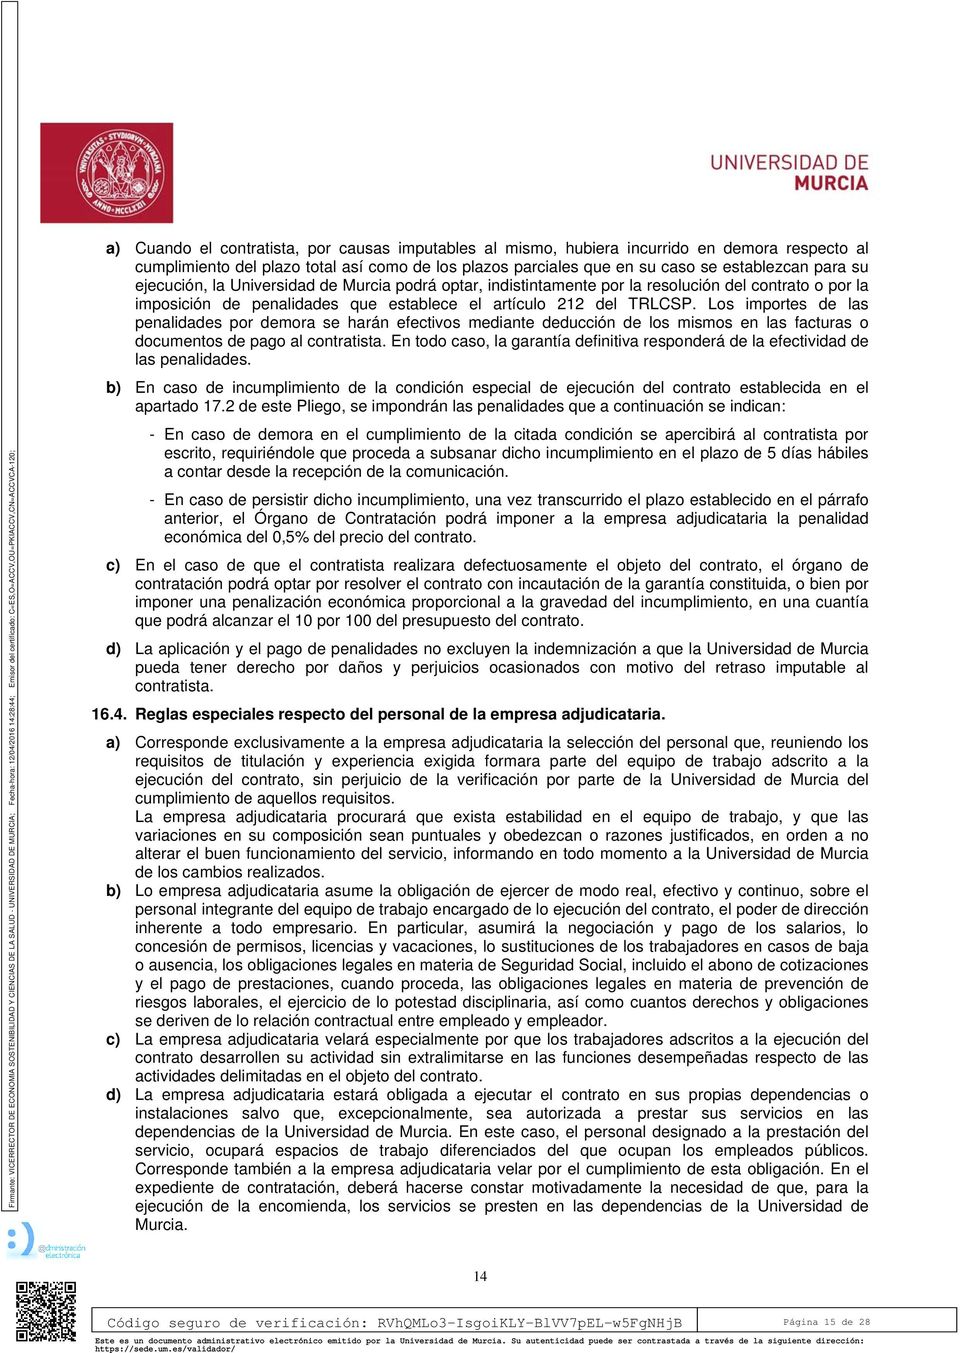 ejecución, la Universidad de Murcia podrá optar, indistintamente por la resolución del contrato o por la imposición de penalidades que establece el artículo 212 del TRLCSP.